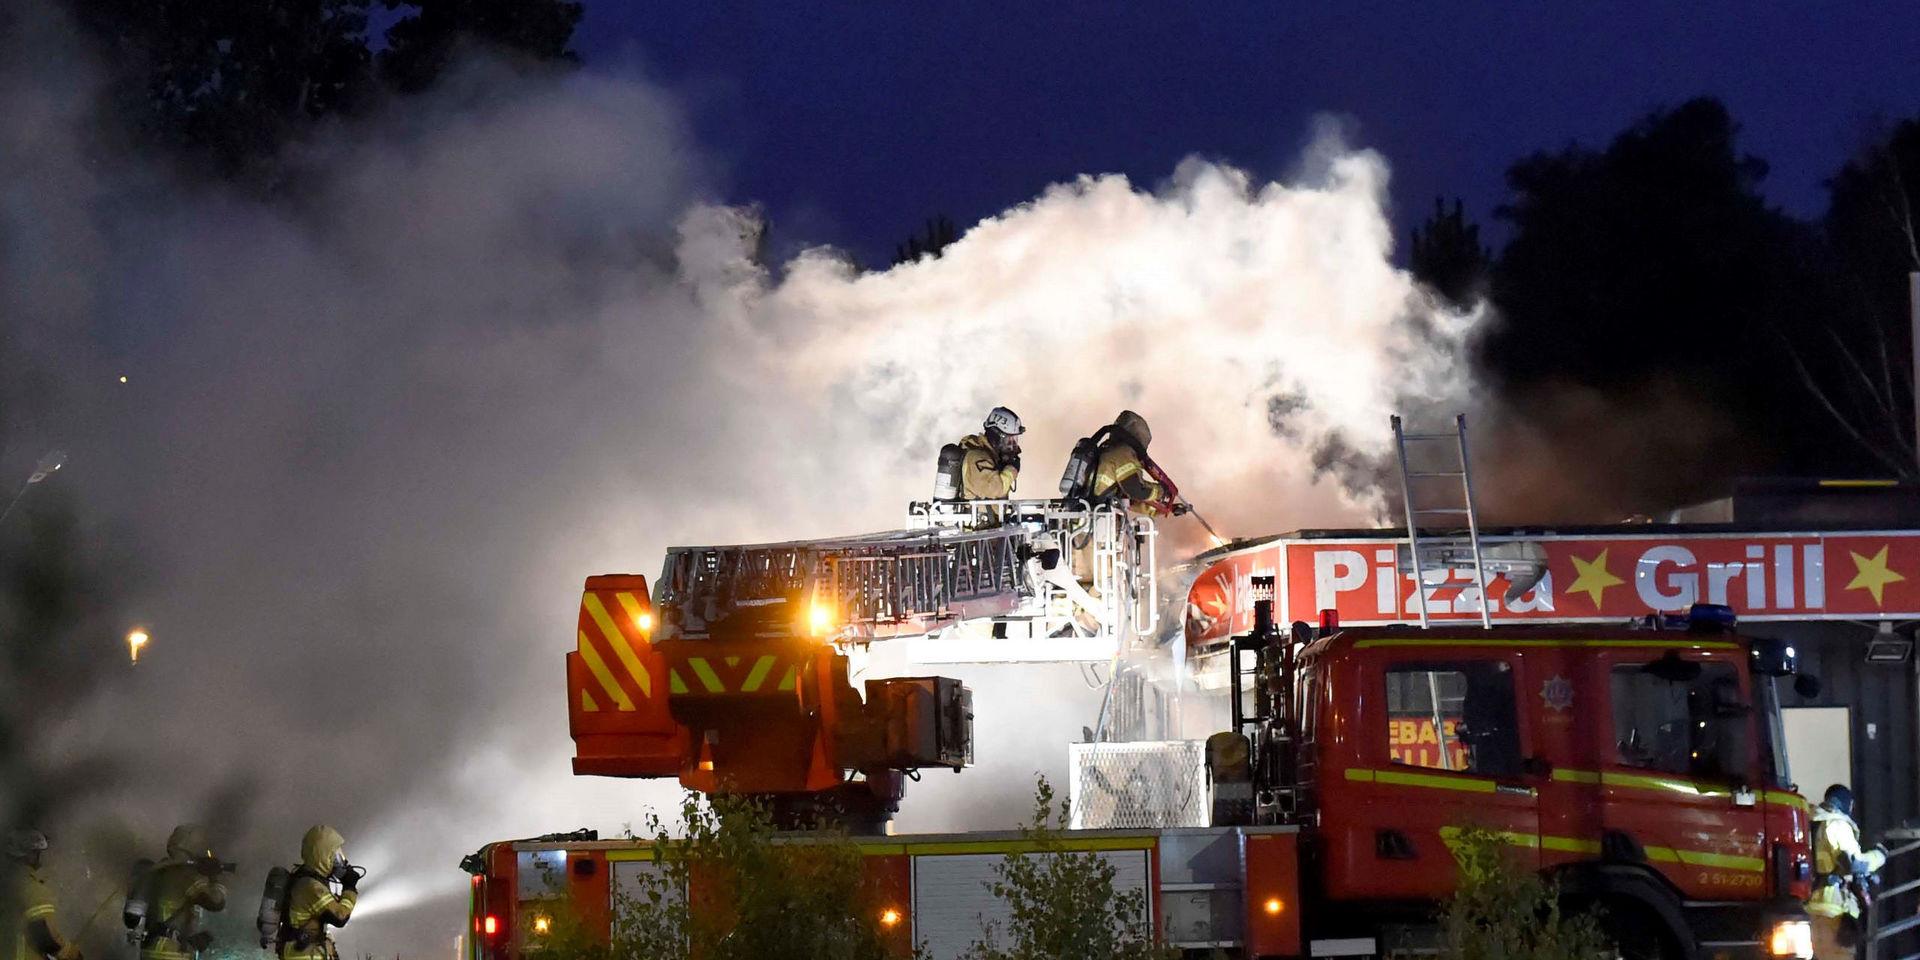 En pizzeria i Askim började brinna kraftigt under natten efter att något exploderat i lokalen. 